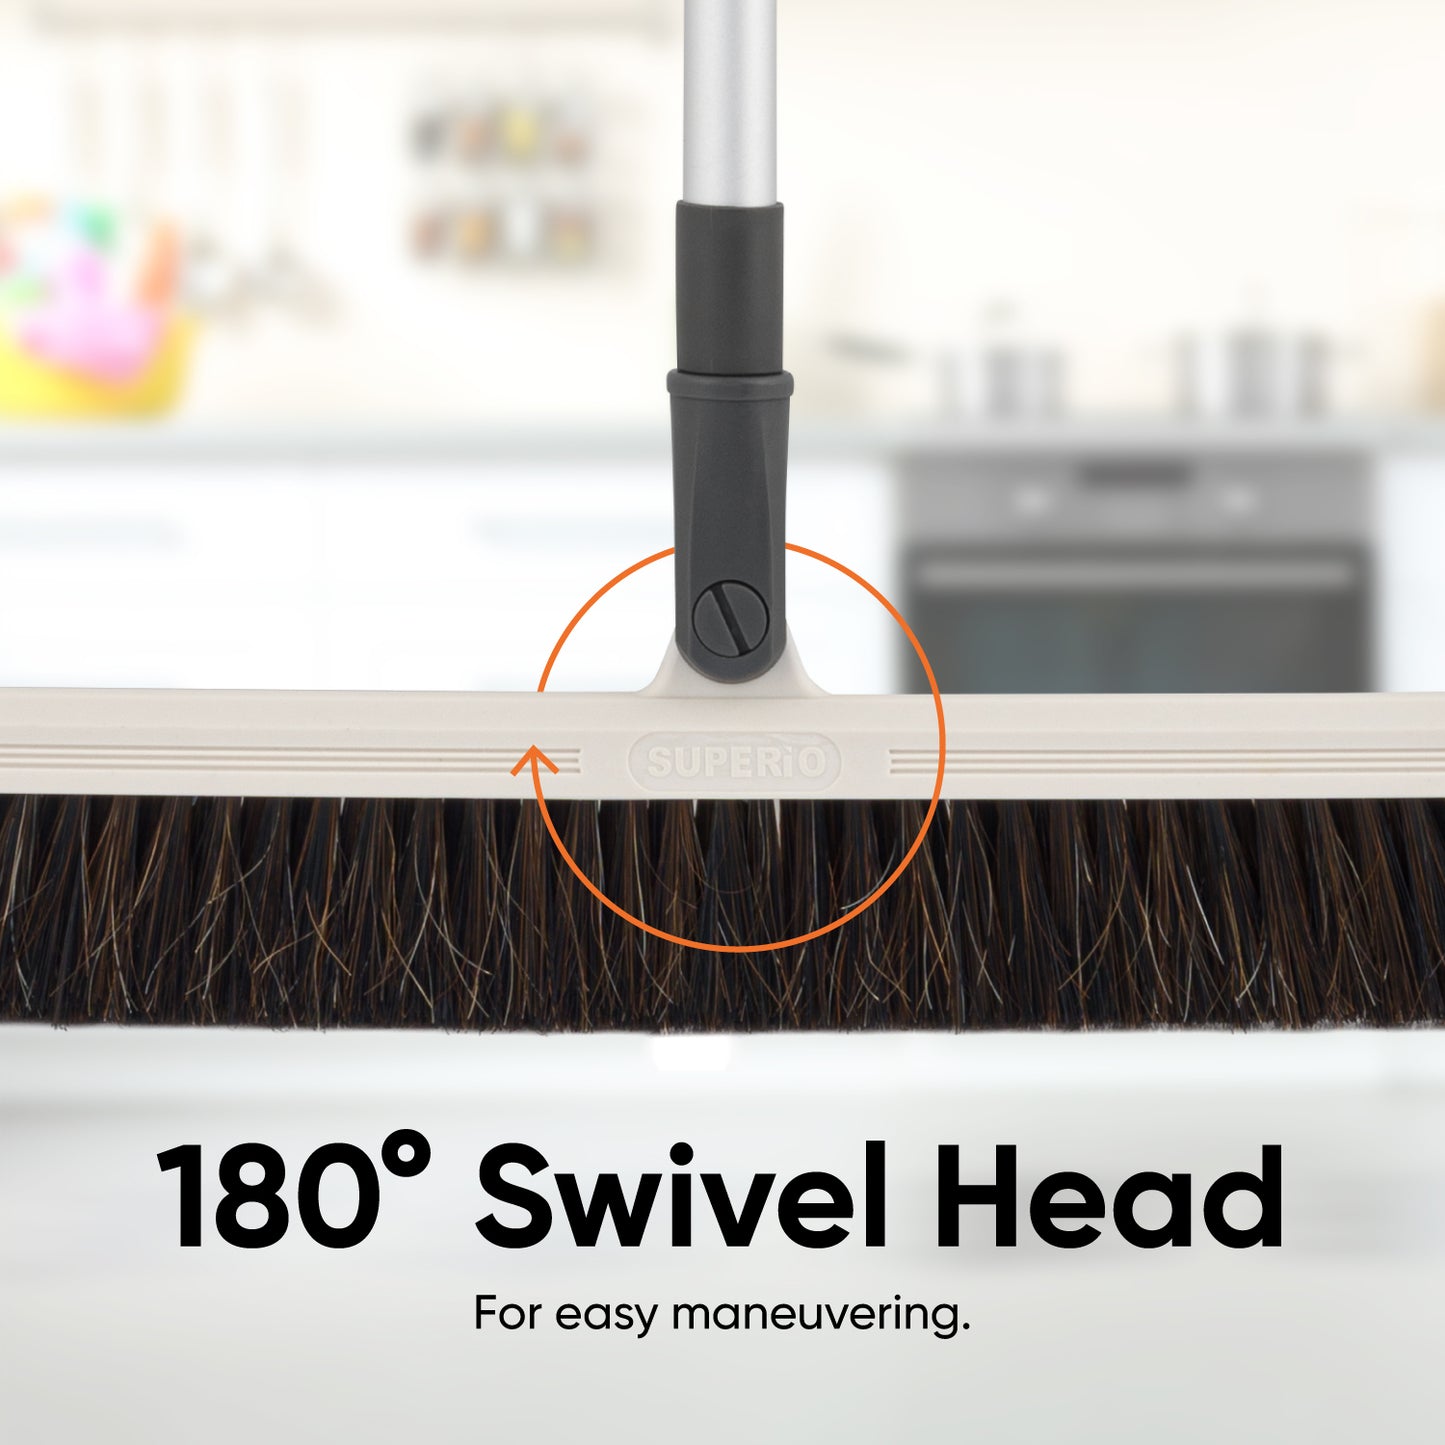 Slim 18" Swivel Head Broom with Durable Horsehair Bristles